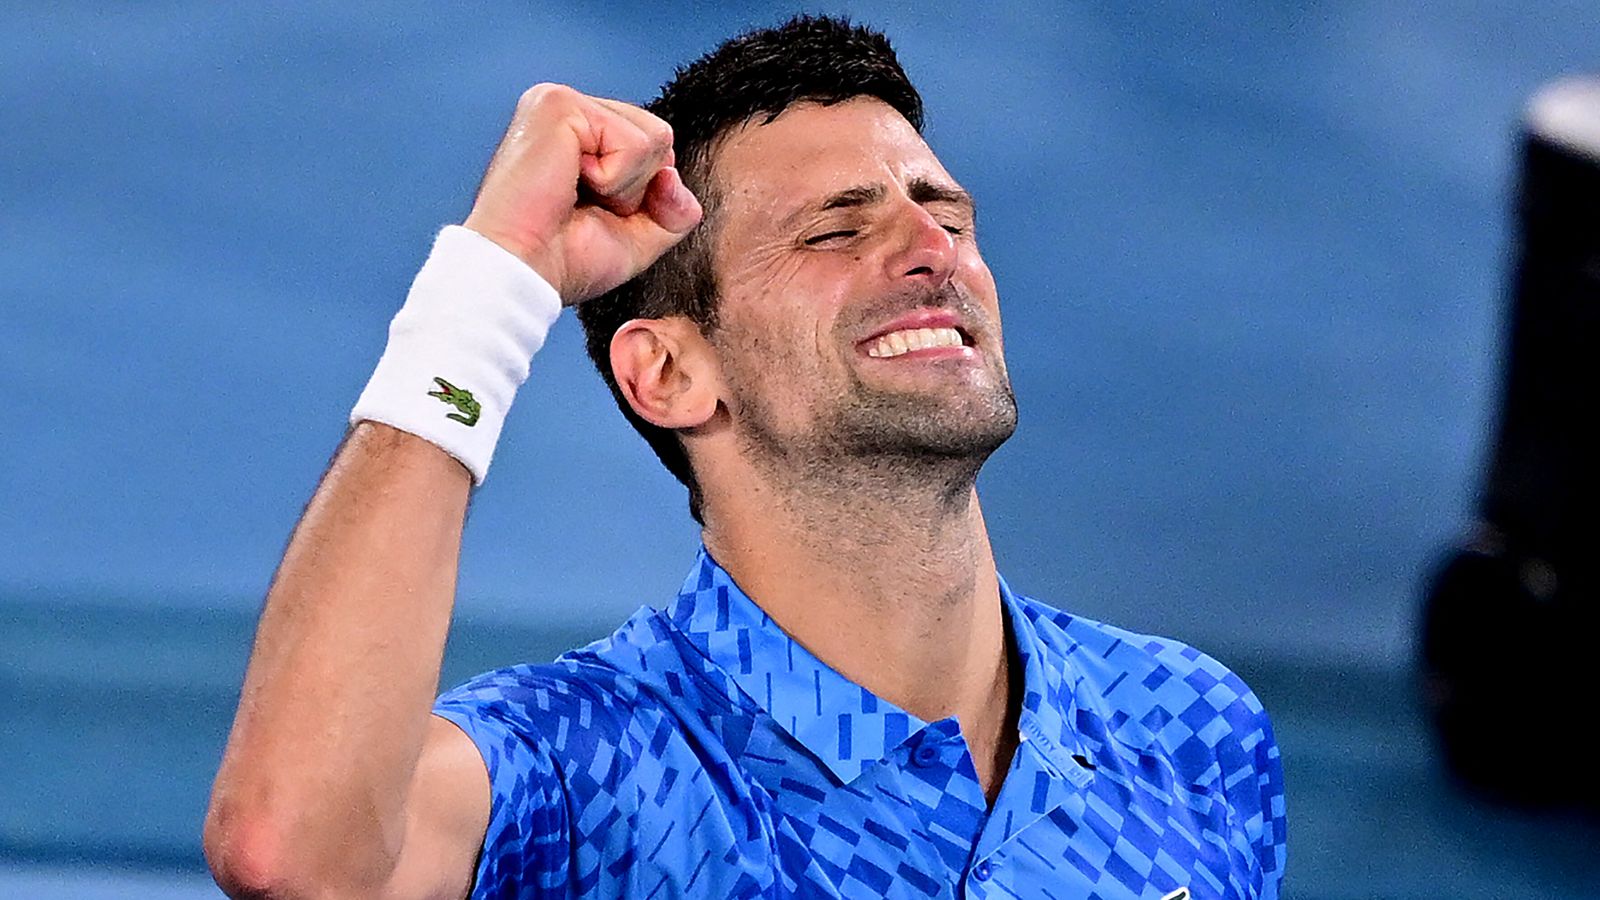 Australian Open Novak Djokovic sets up final against Stefanos